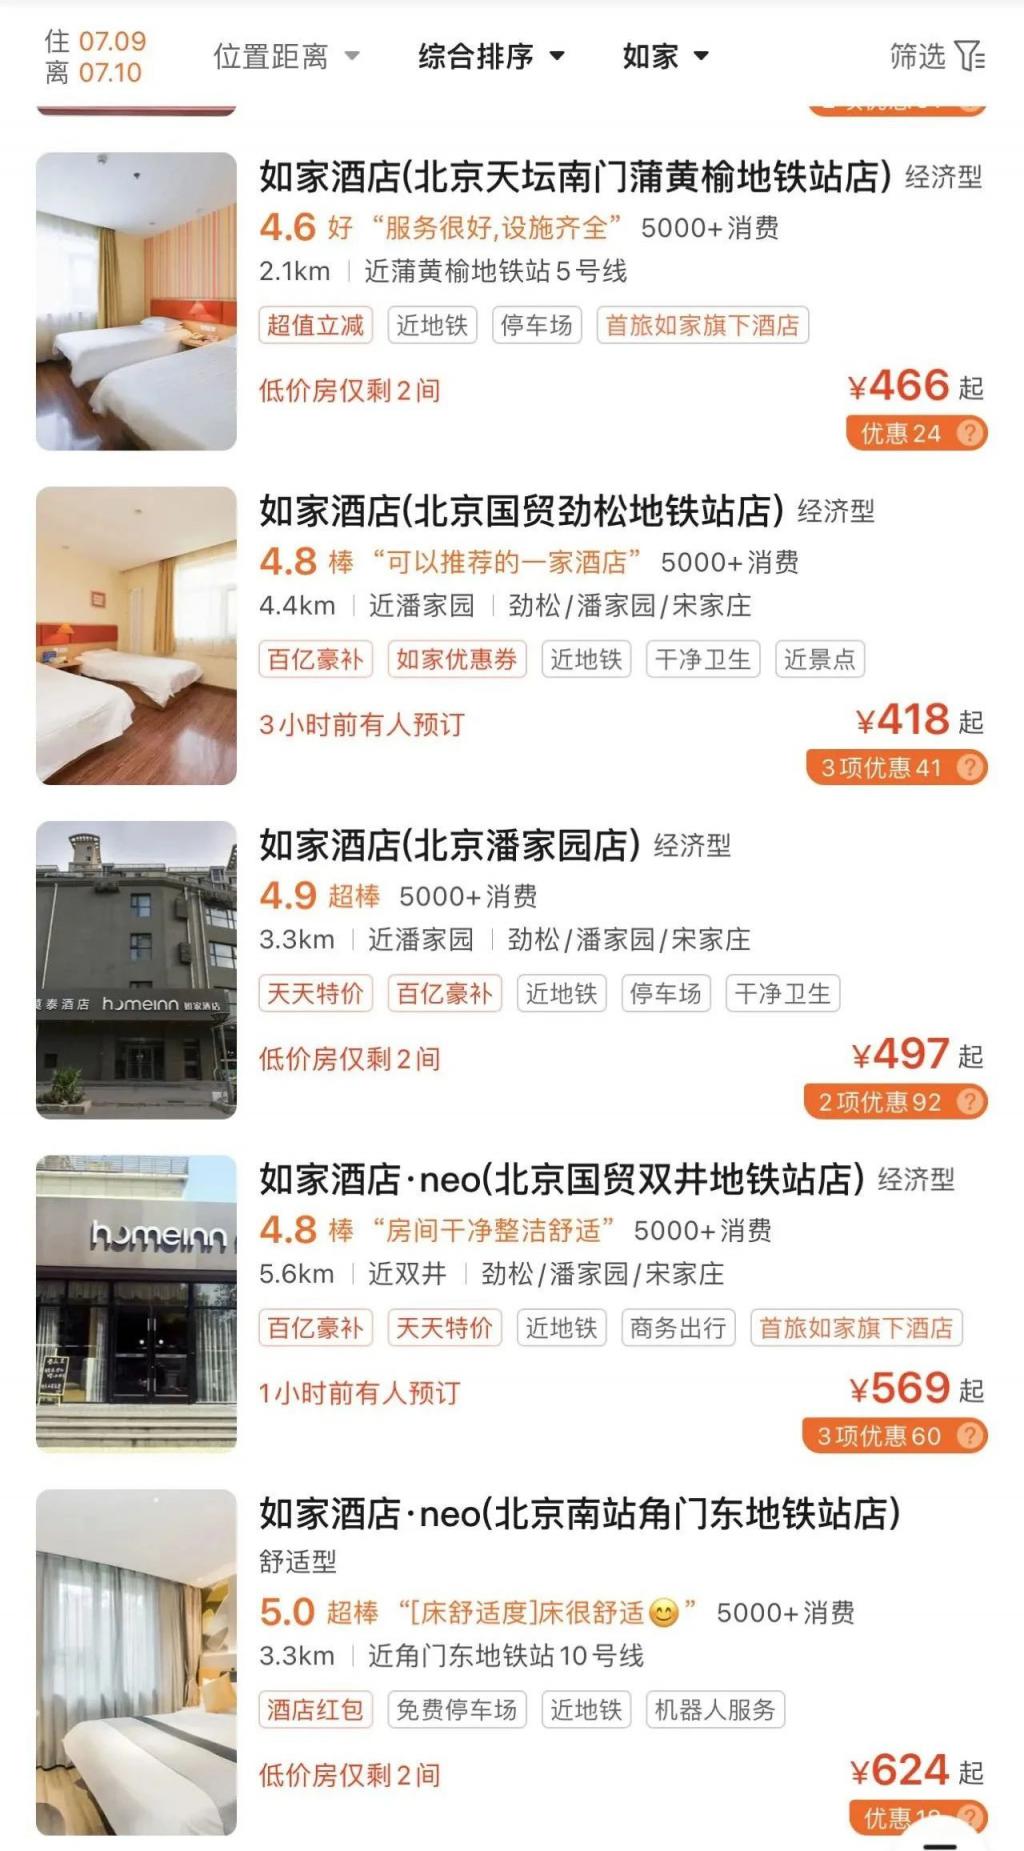 这是美团北京最普通的如家价格